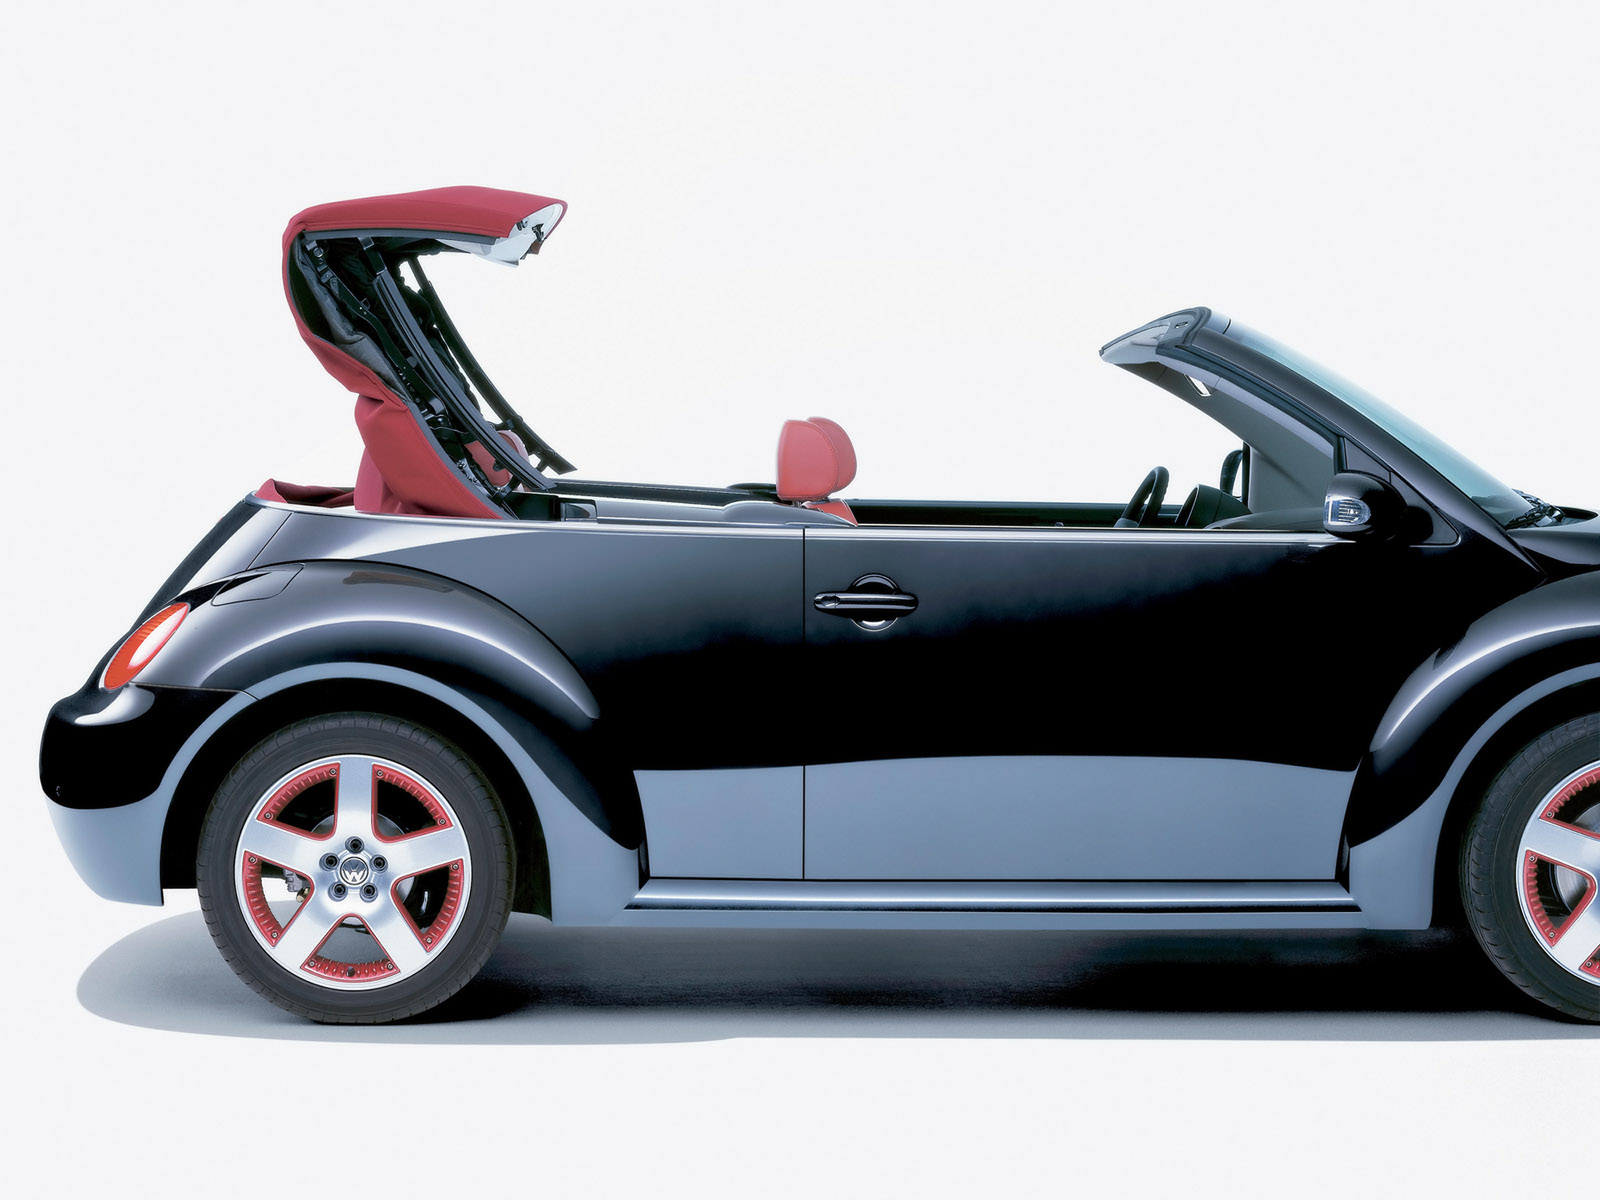 Volkswagen New Beetle 1600. View Download Wallpaper. 1600x1200. Comments